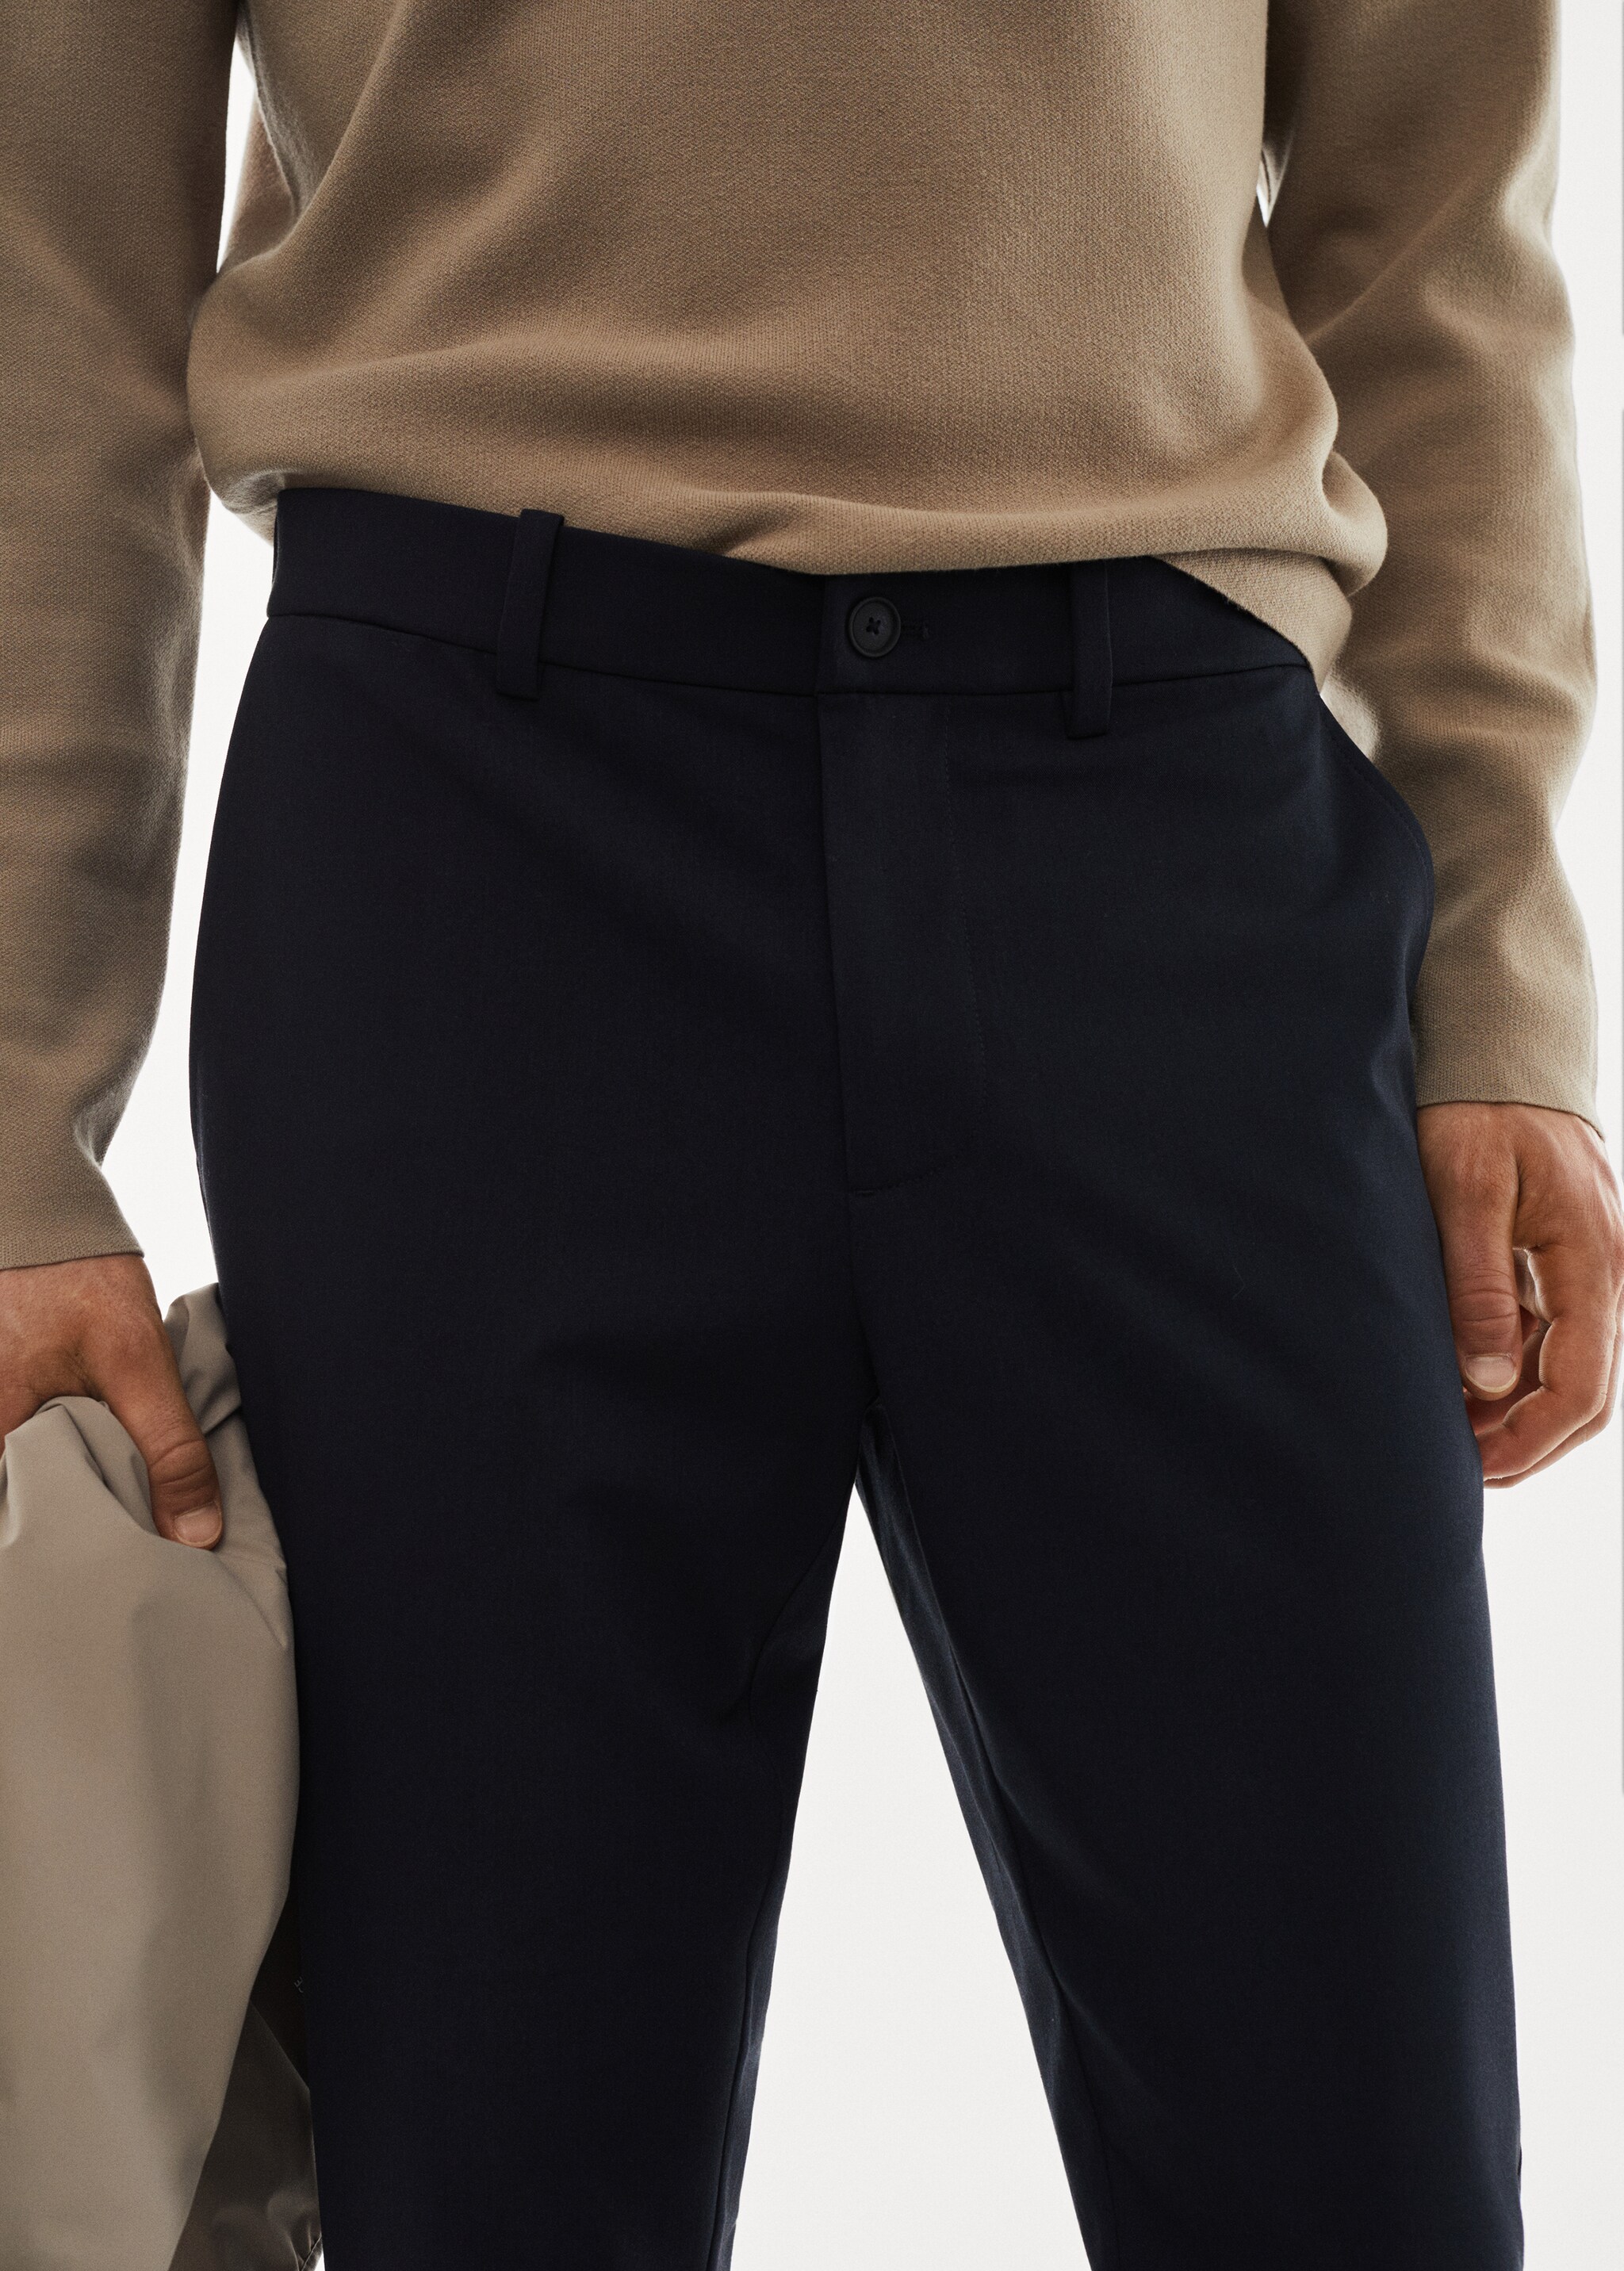 Slim fit stretch trousers - Pormenor do artigo 1